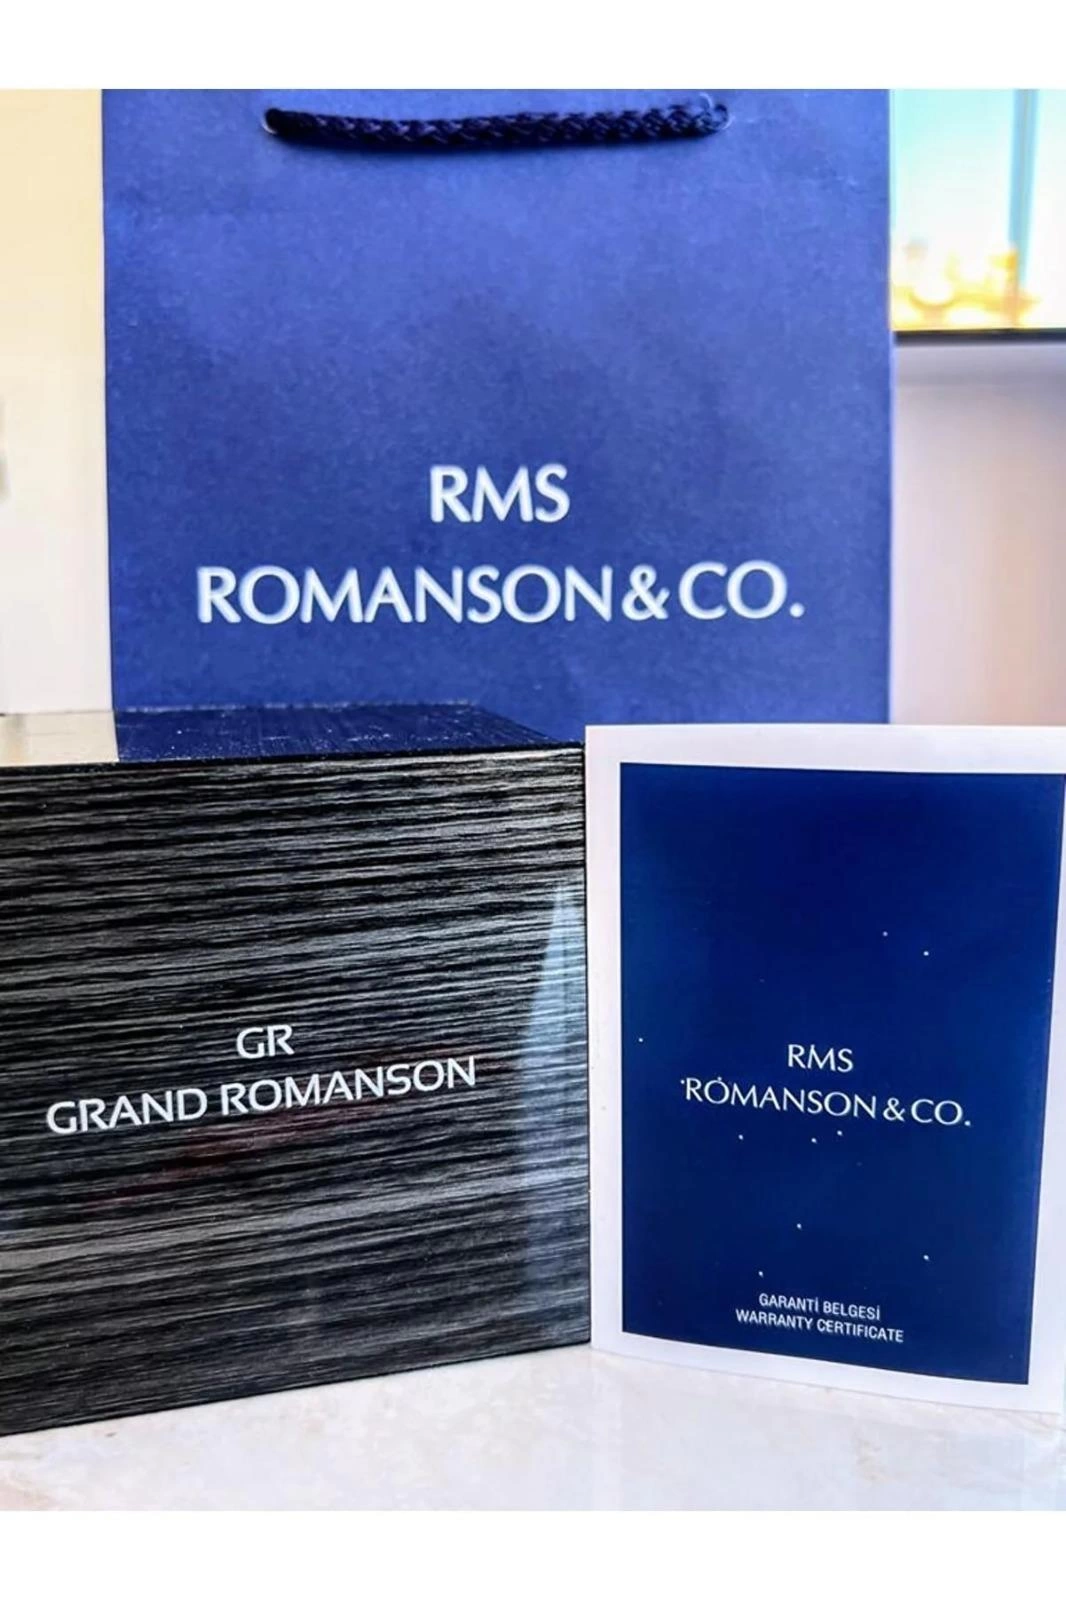 RMS.125 Romanson Özel Seri Takım Elbiseye Özel Tasarım Damat & Nişan Saati  Kararmaz Renk Atmaz